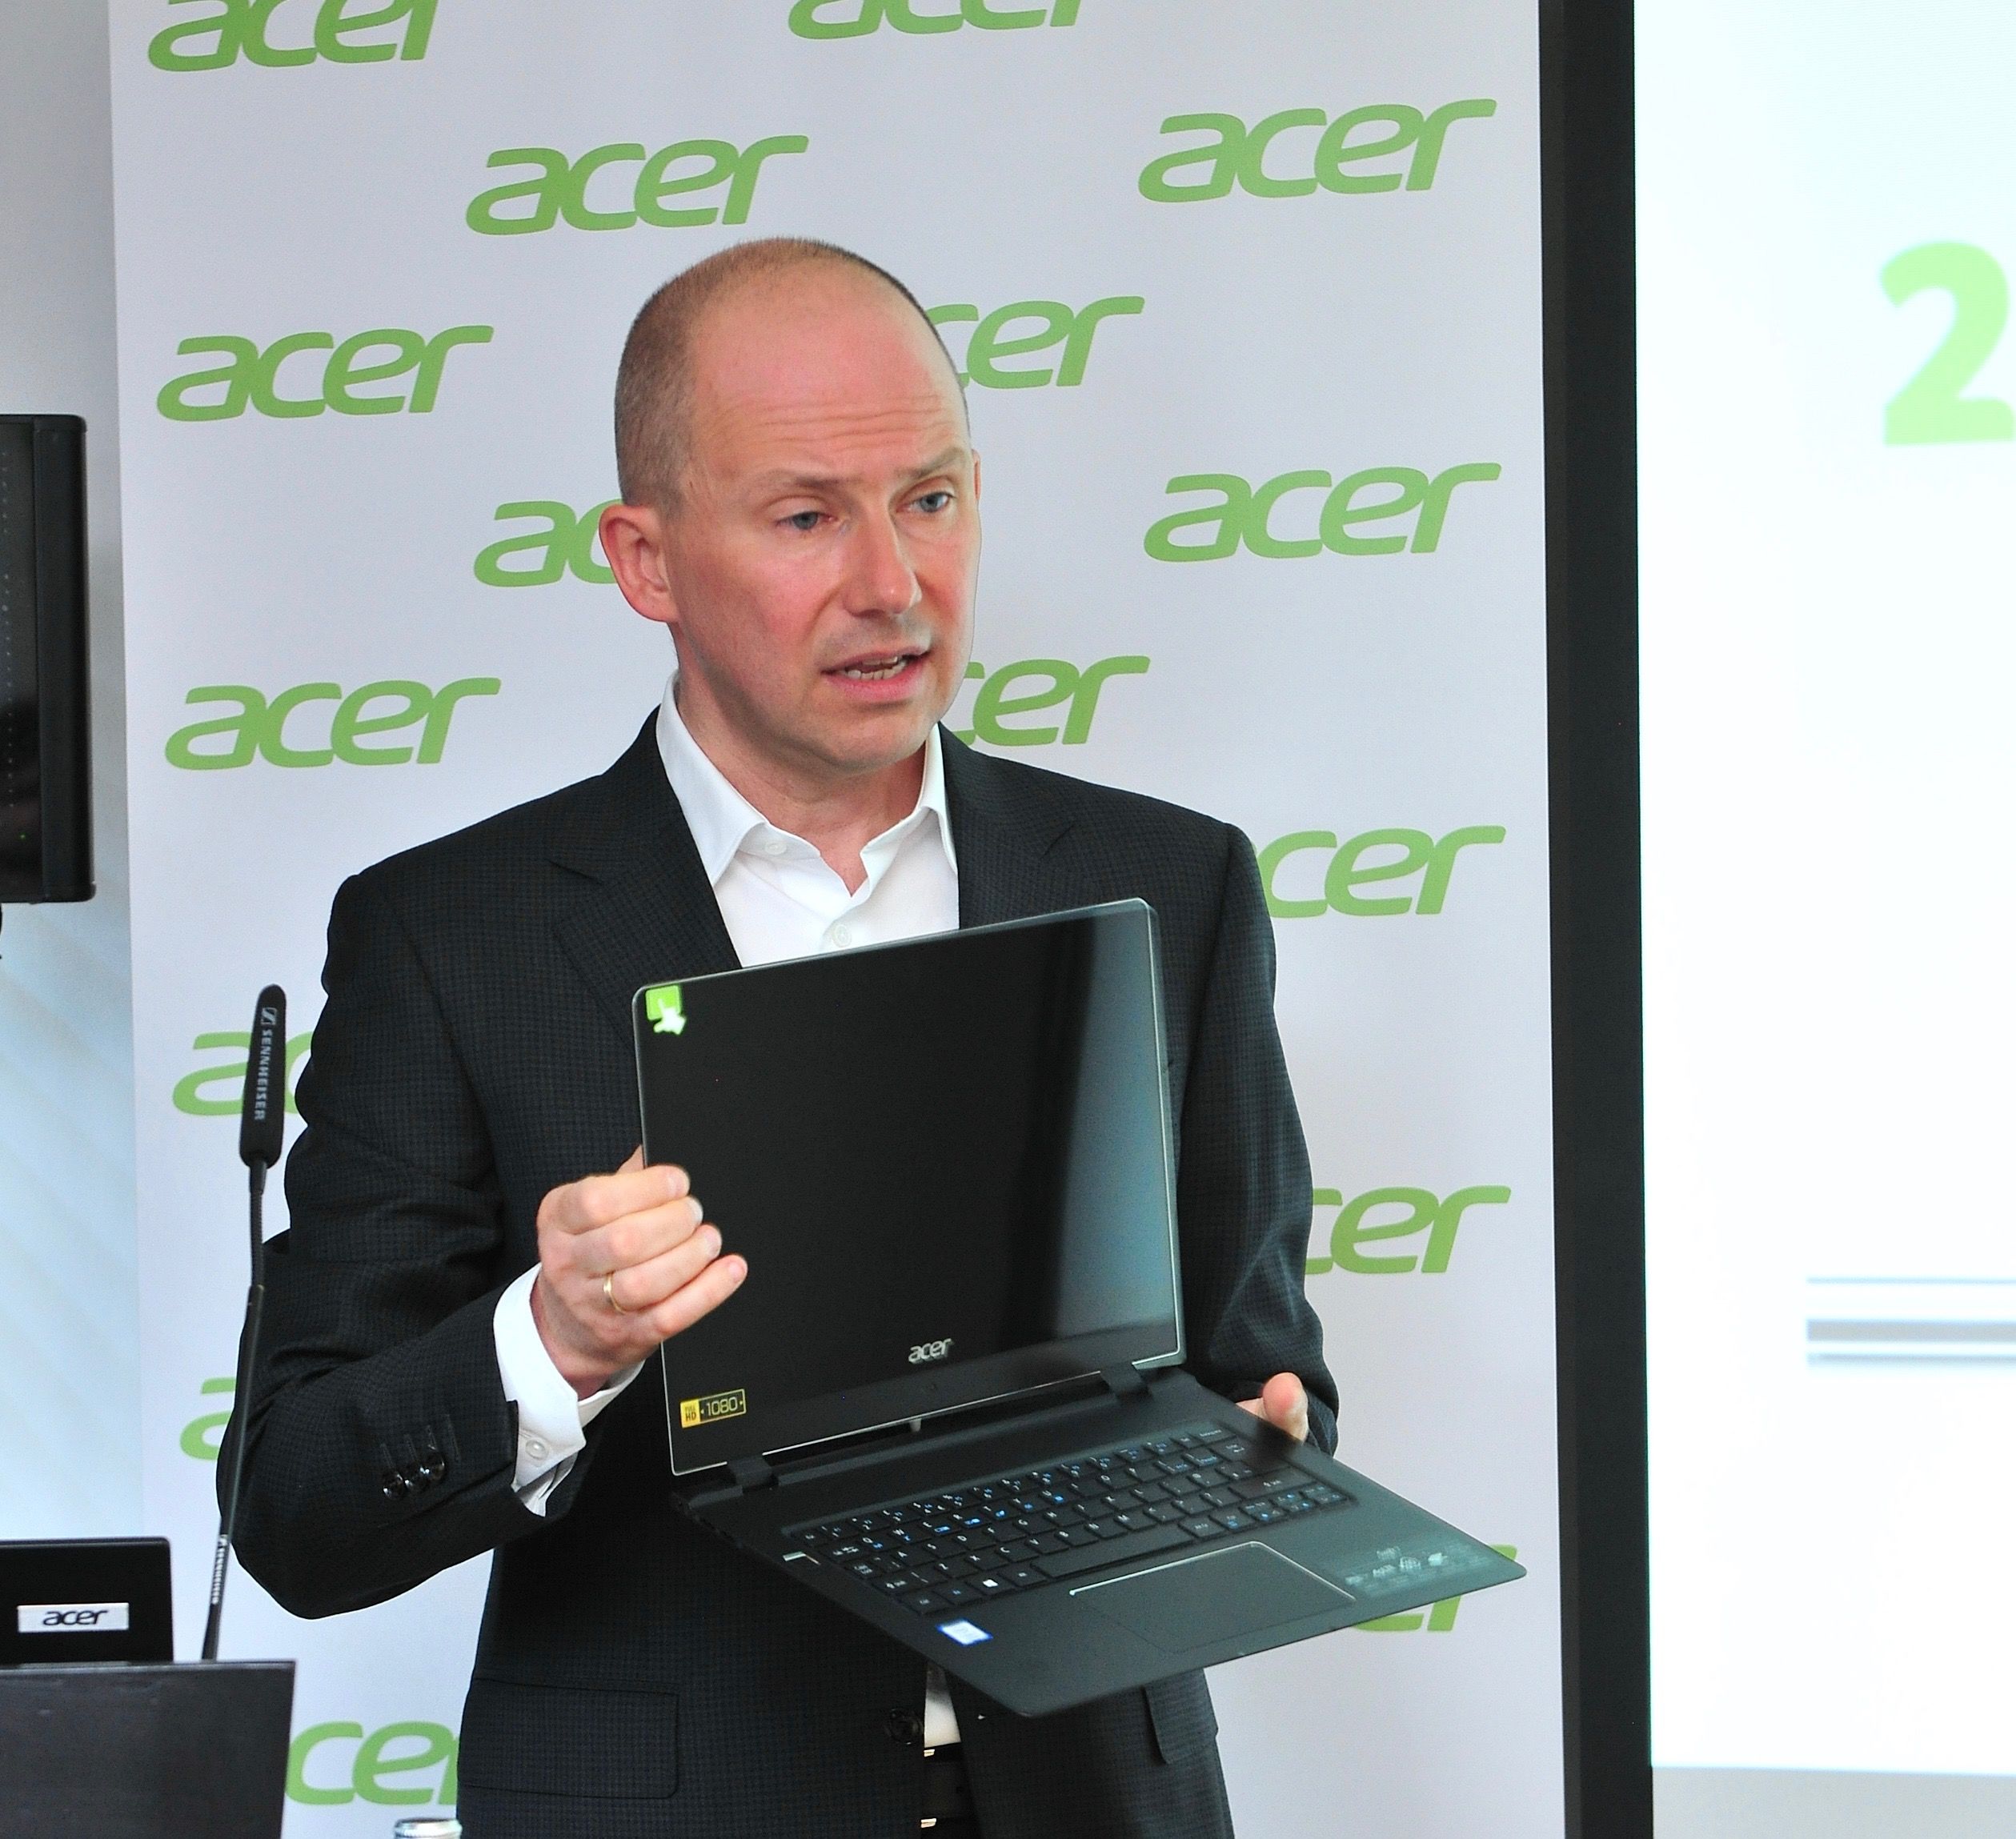 Acer tüketicilere 'değer' sunmaya odaklanıyor